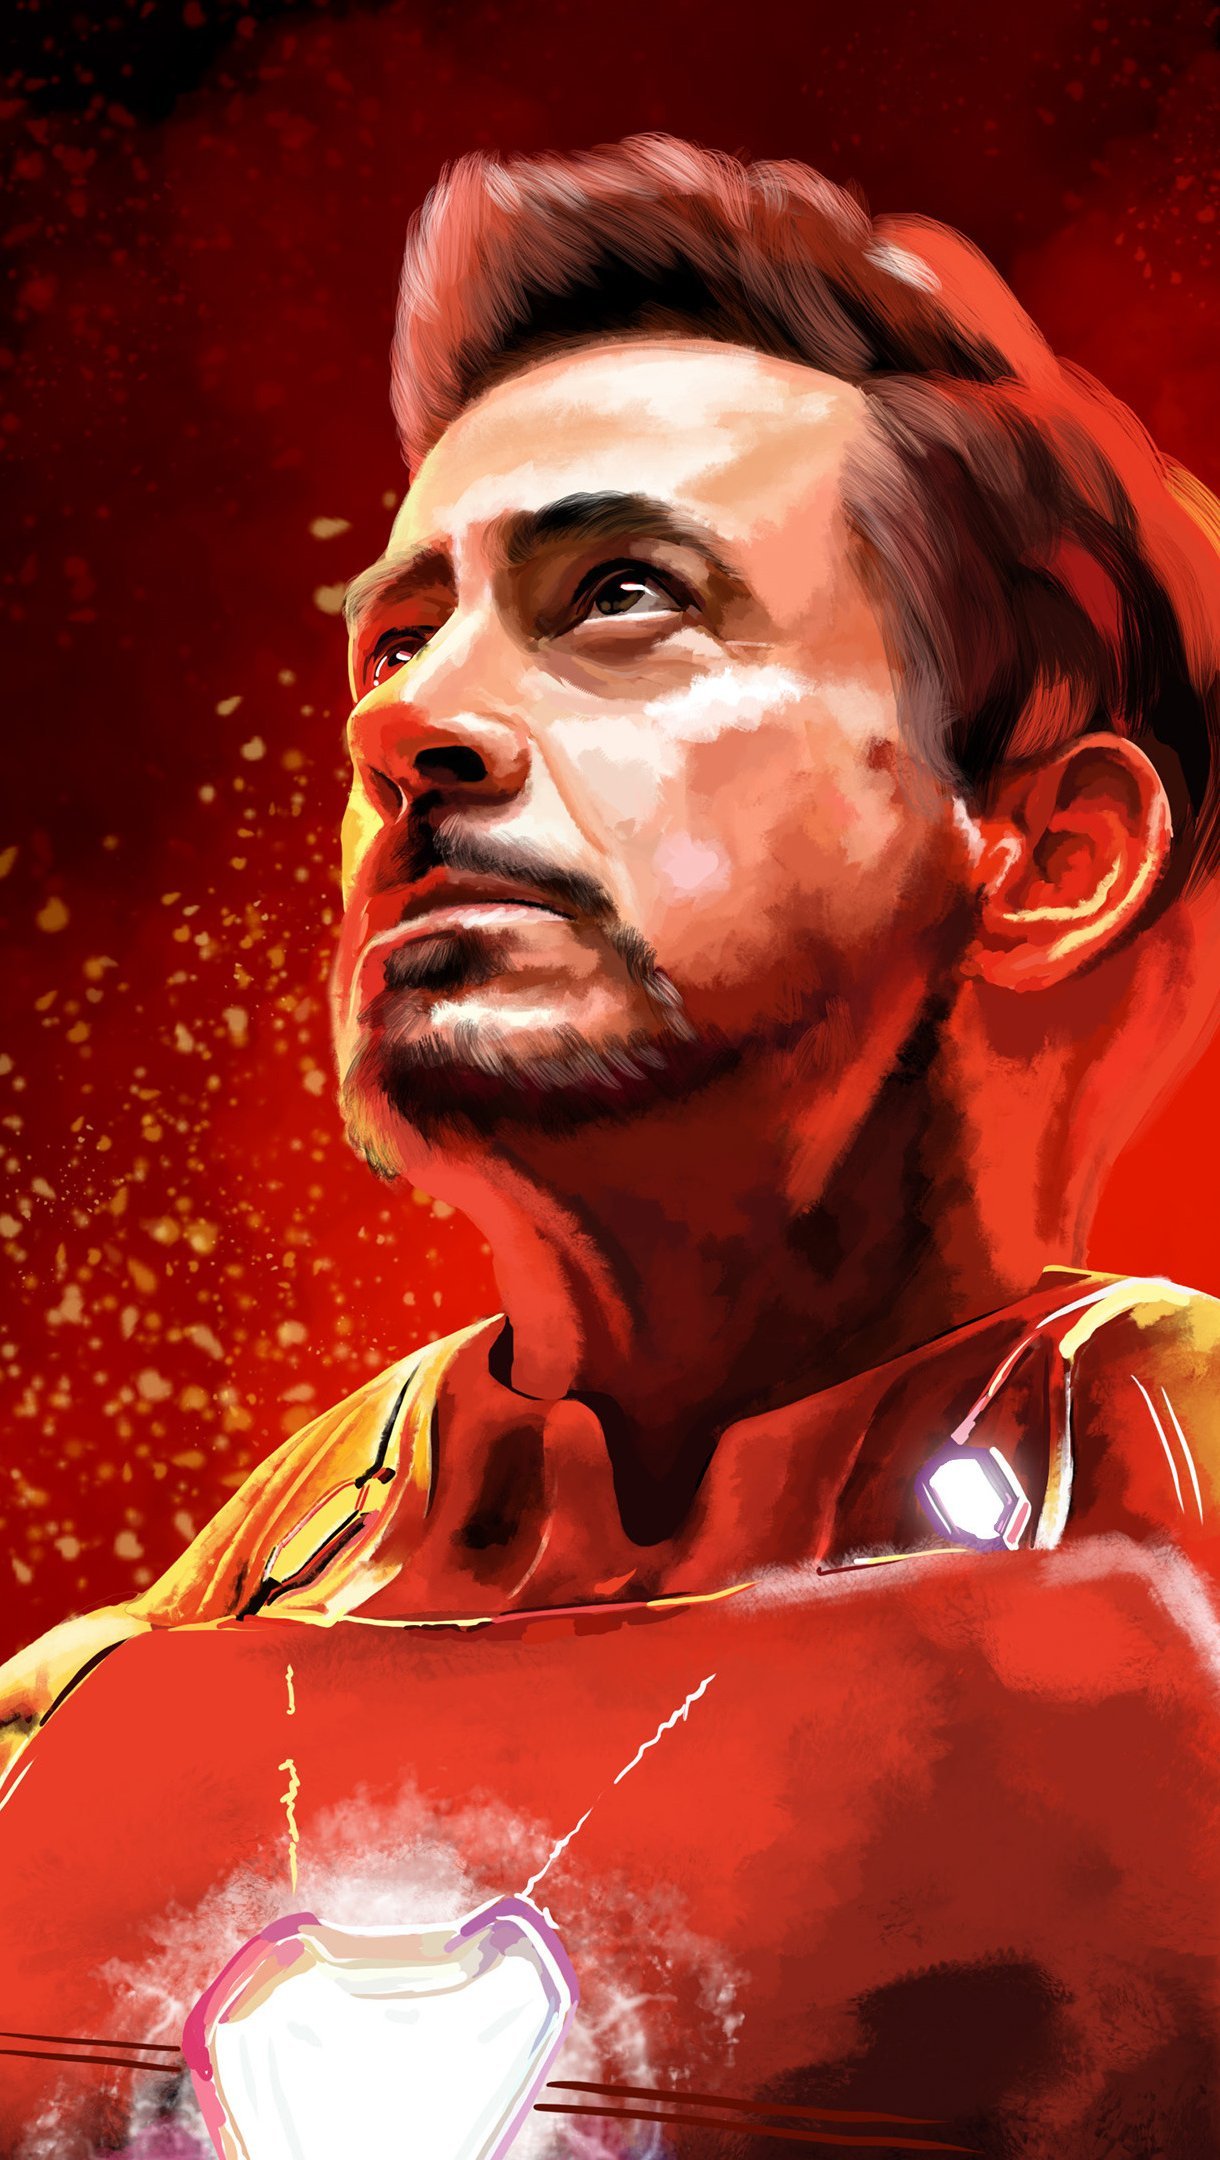 Wallpaper Robert Downey Jr as Iron Man Fanart Vertical